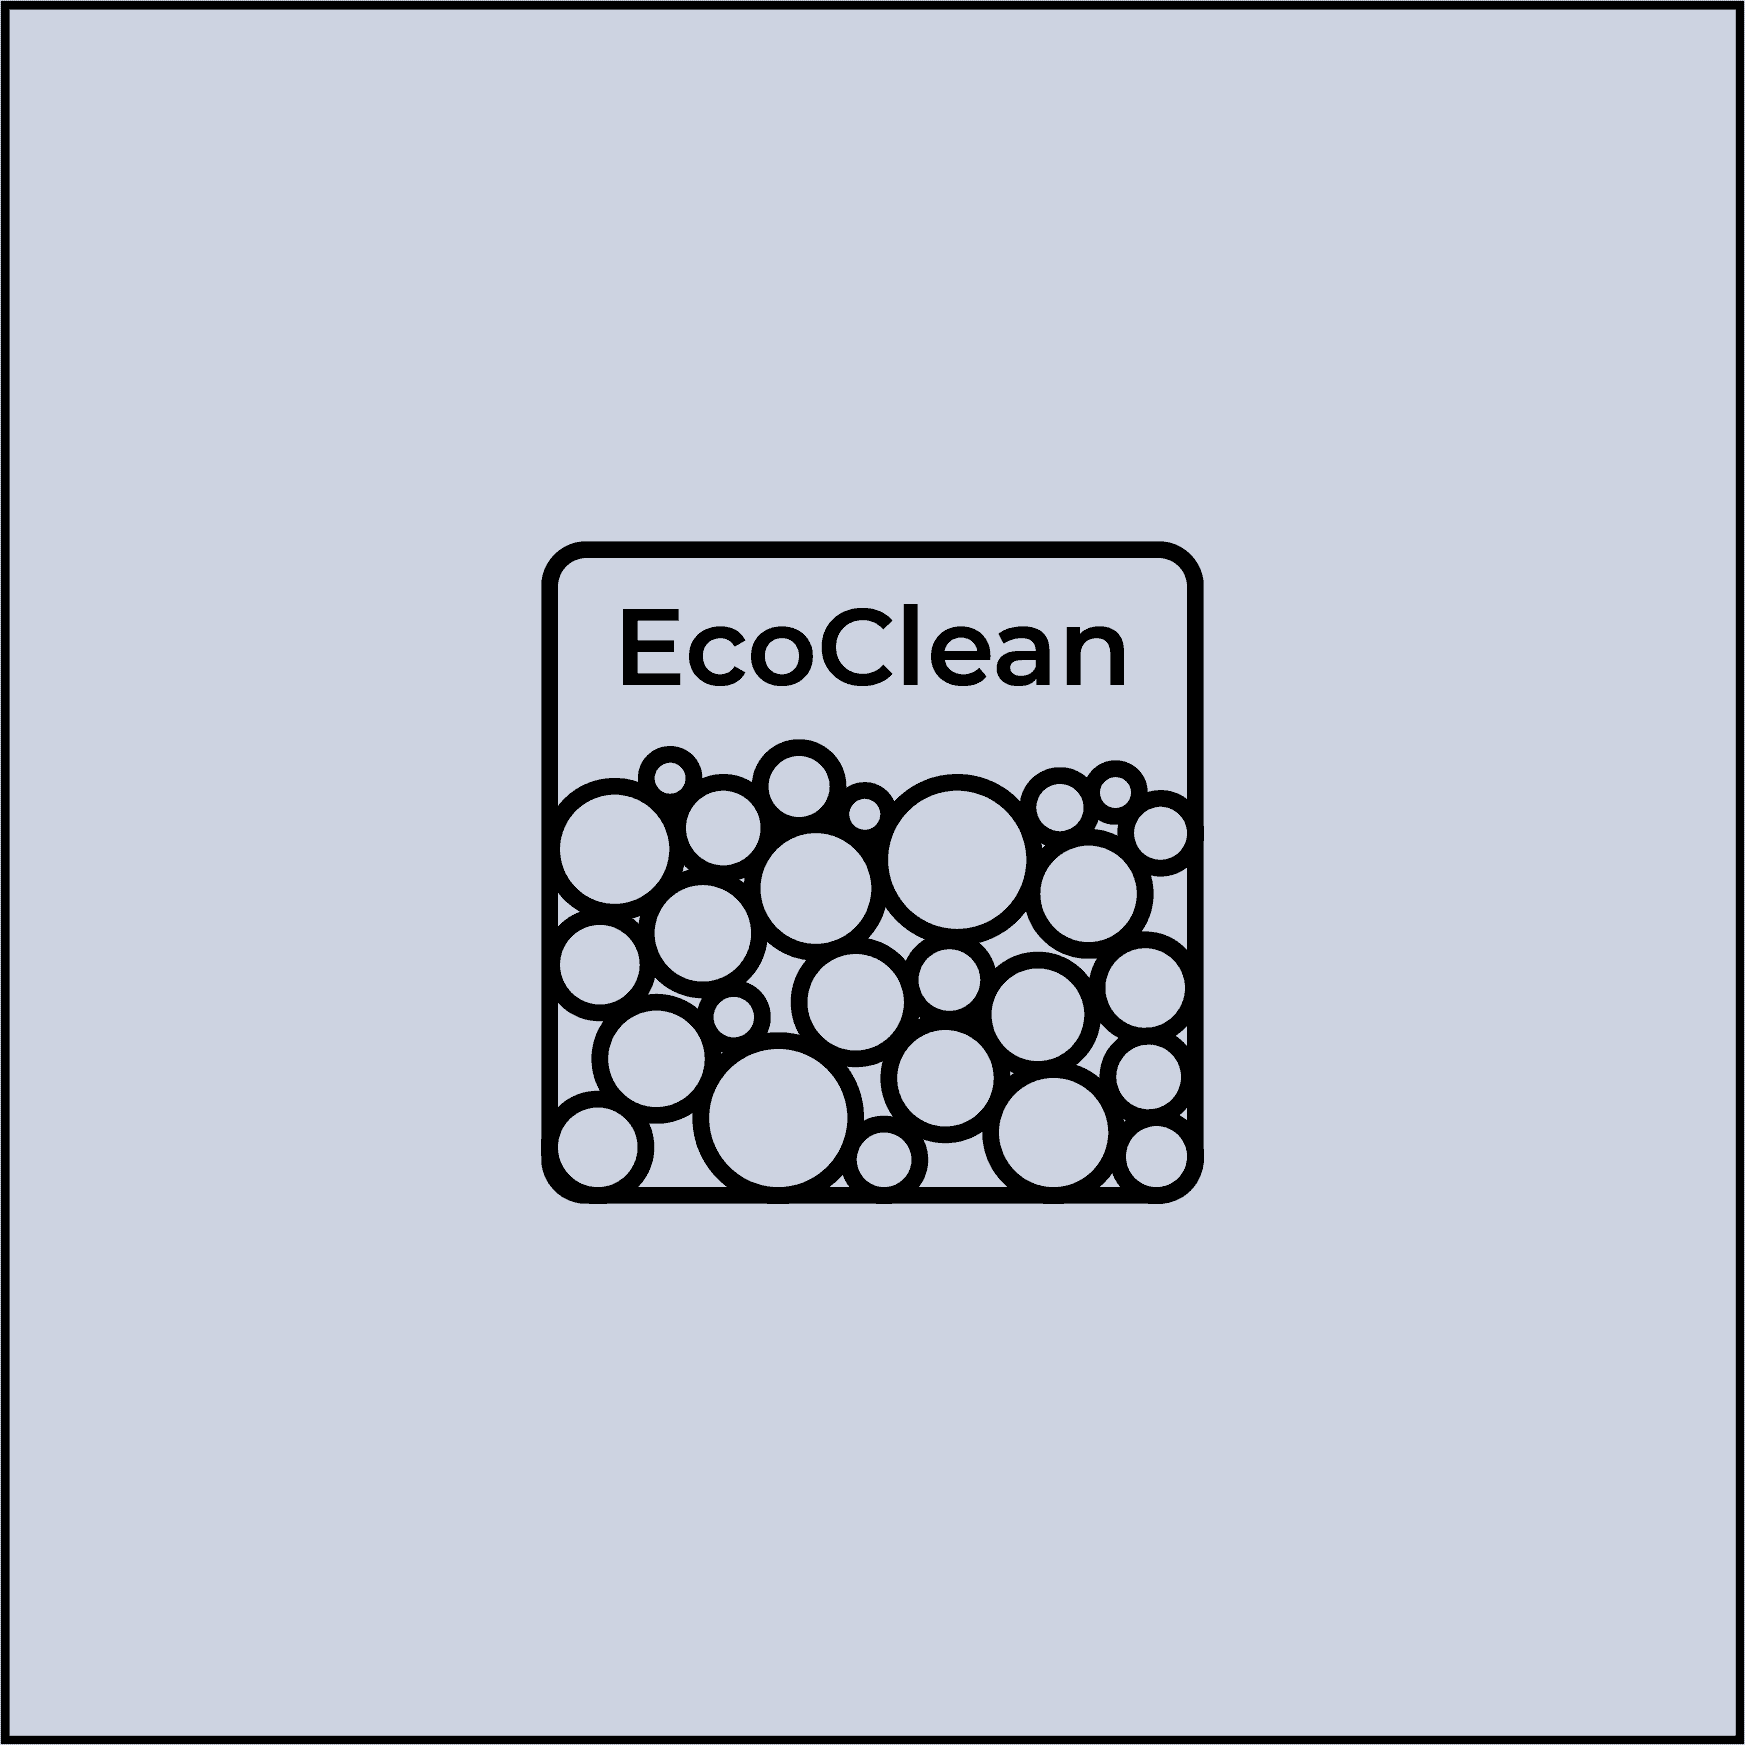 La technologie EcoClean ou le nettoyage automatique